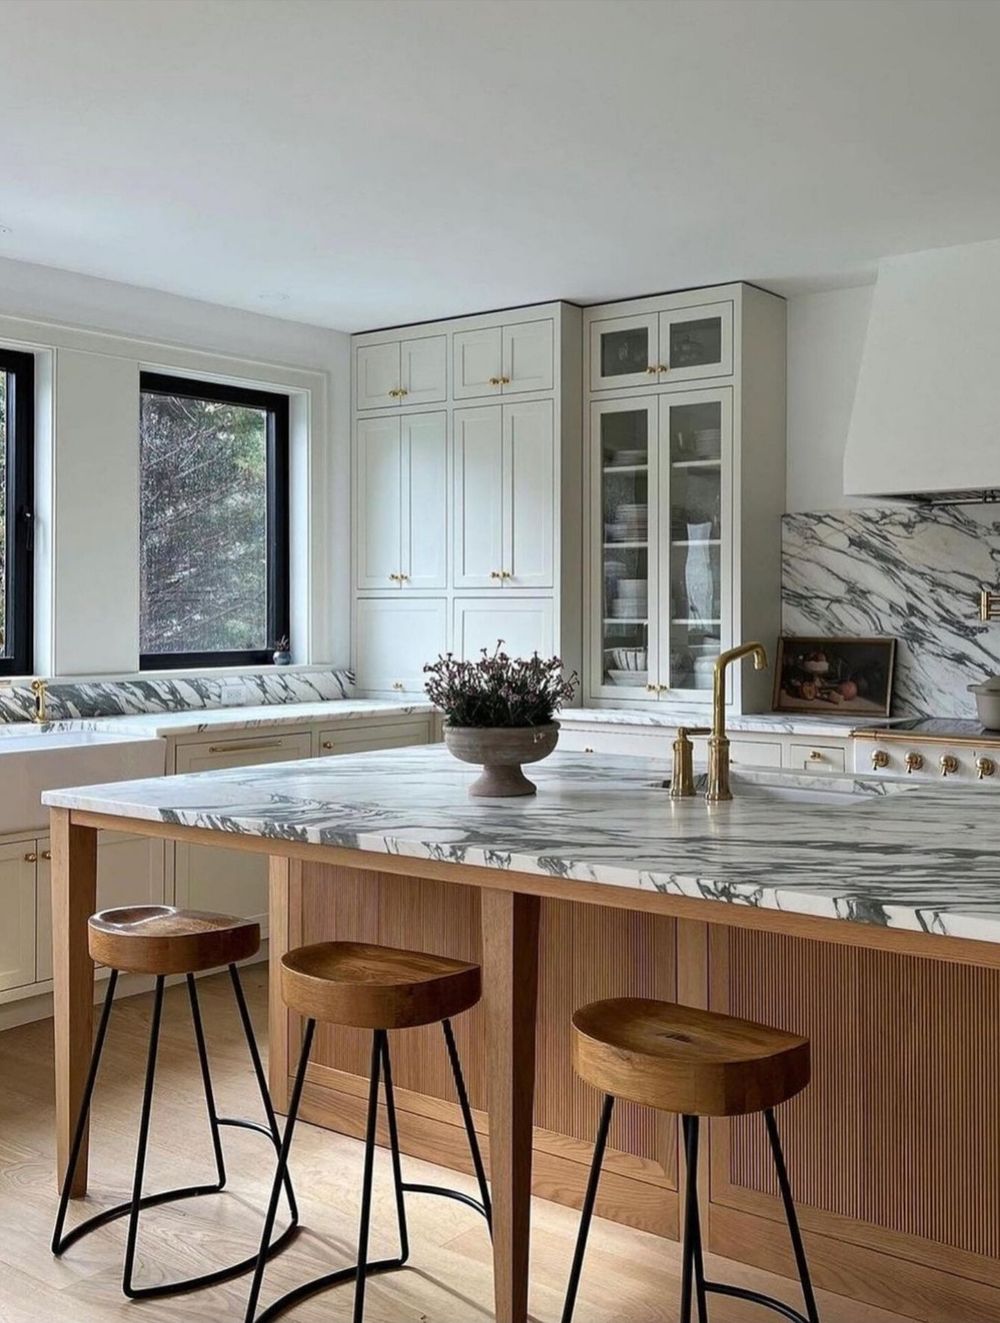 Modern kitchen design ideas @chestnut.hill.interiors